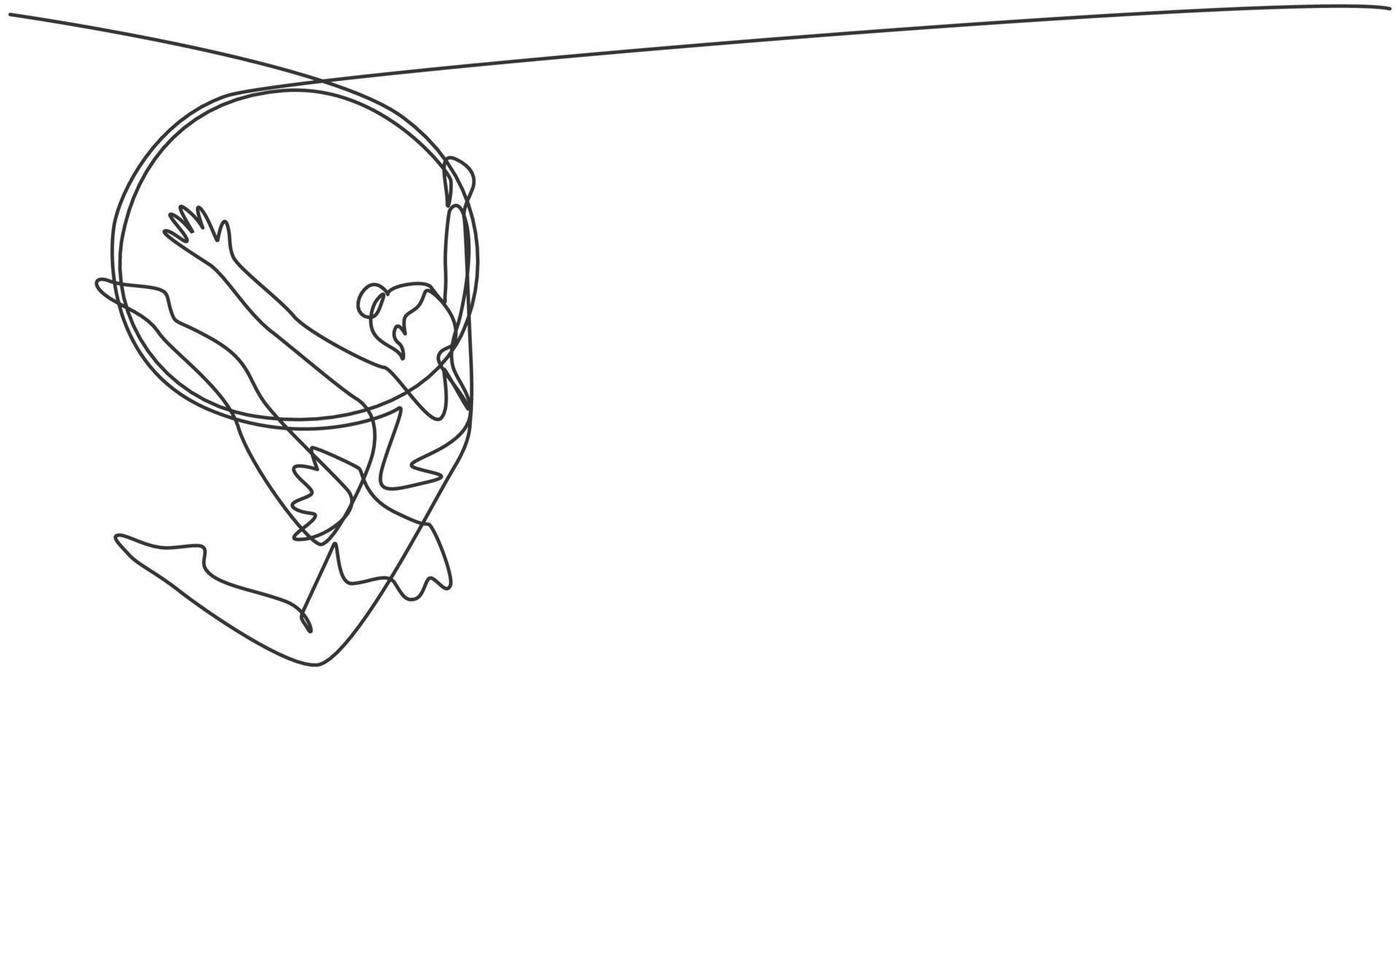 continu één lijn die een acrobatische vrouw tekent die tijdens het dansen op een luchthoepel optreedt en één arm en beide benen naar achteren heeft gestrekt. enkele lijn tekenen ontwerp vector grafische afbeelding.